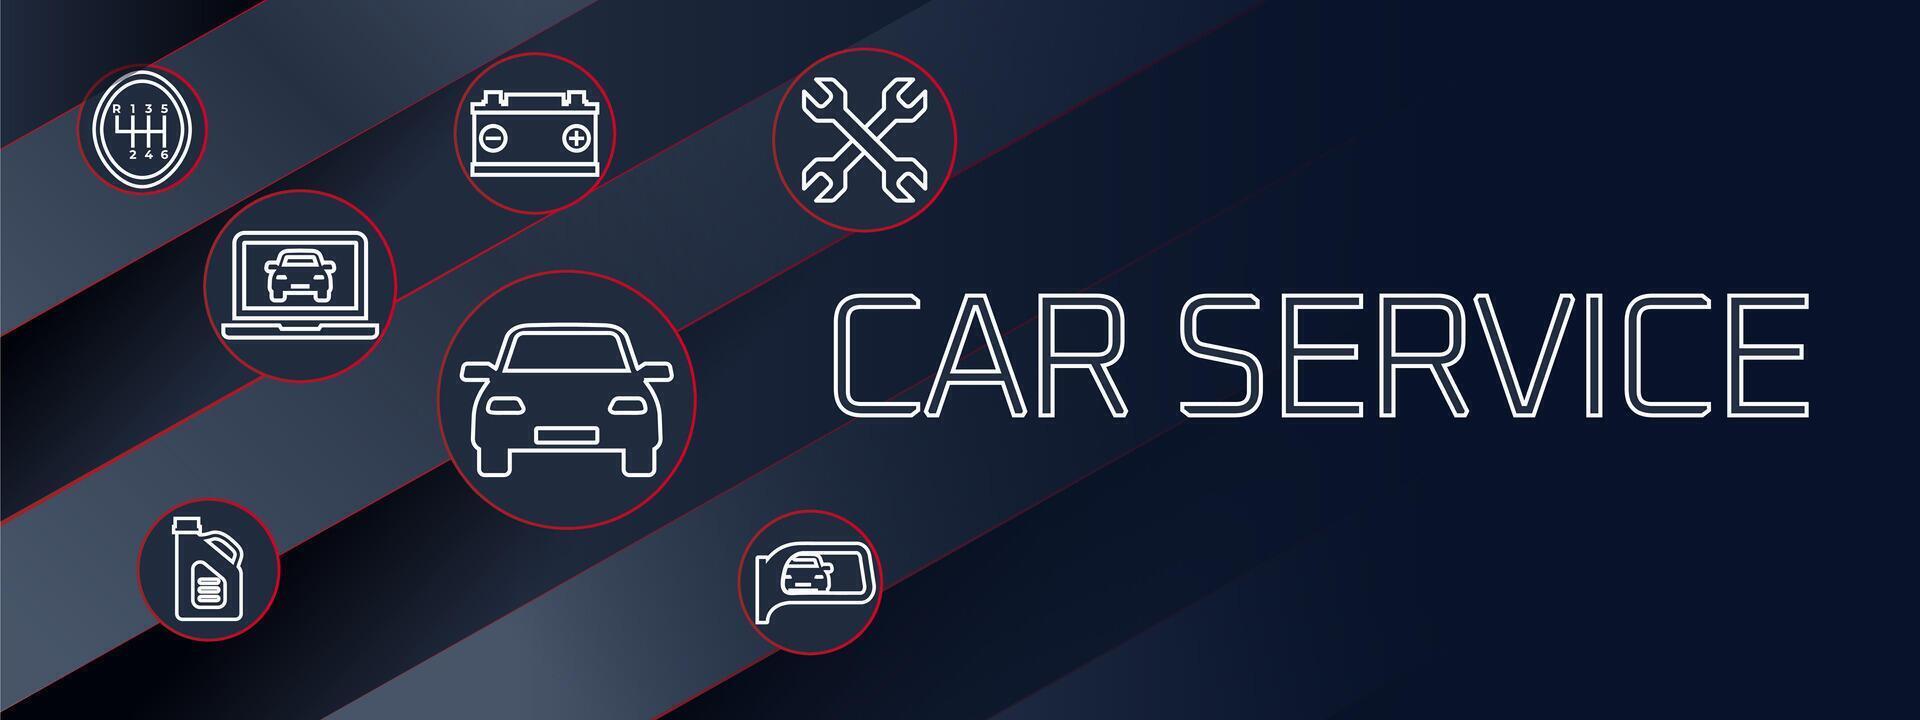 Car Service Banner Background Design vector